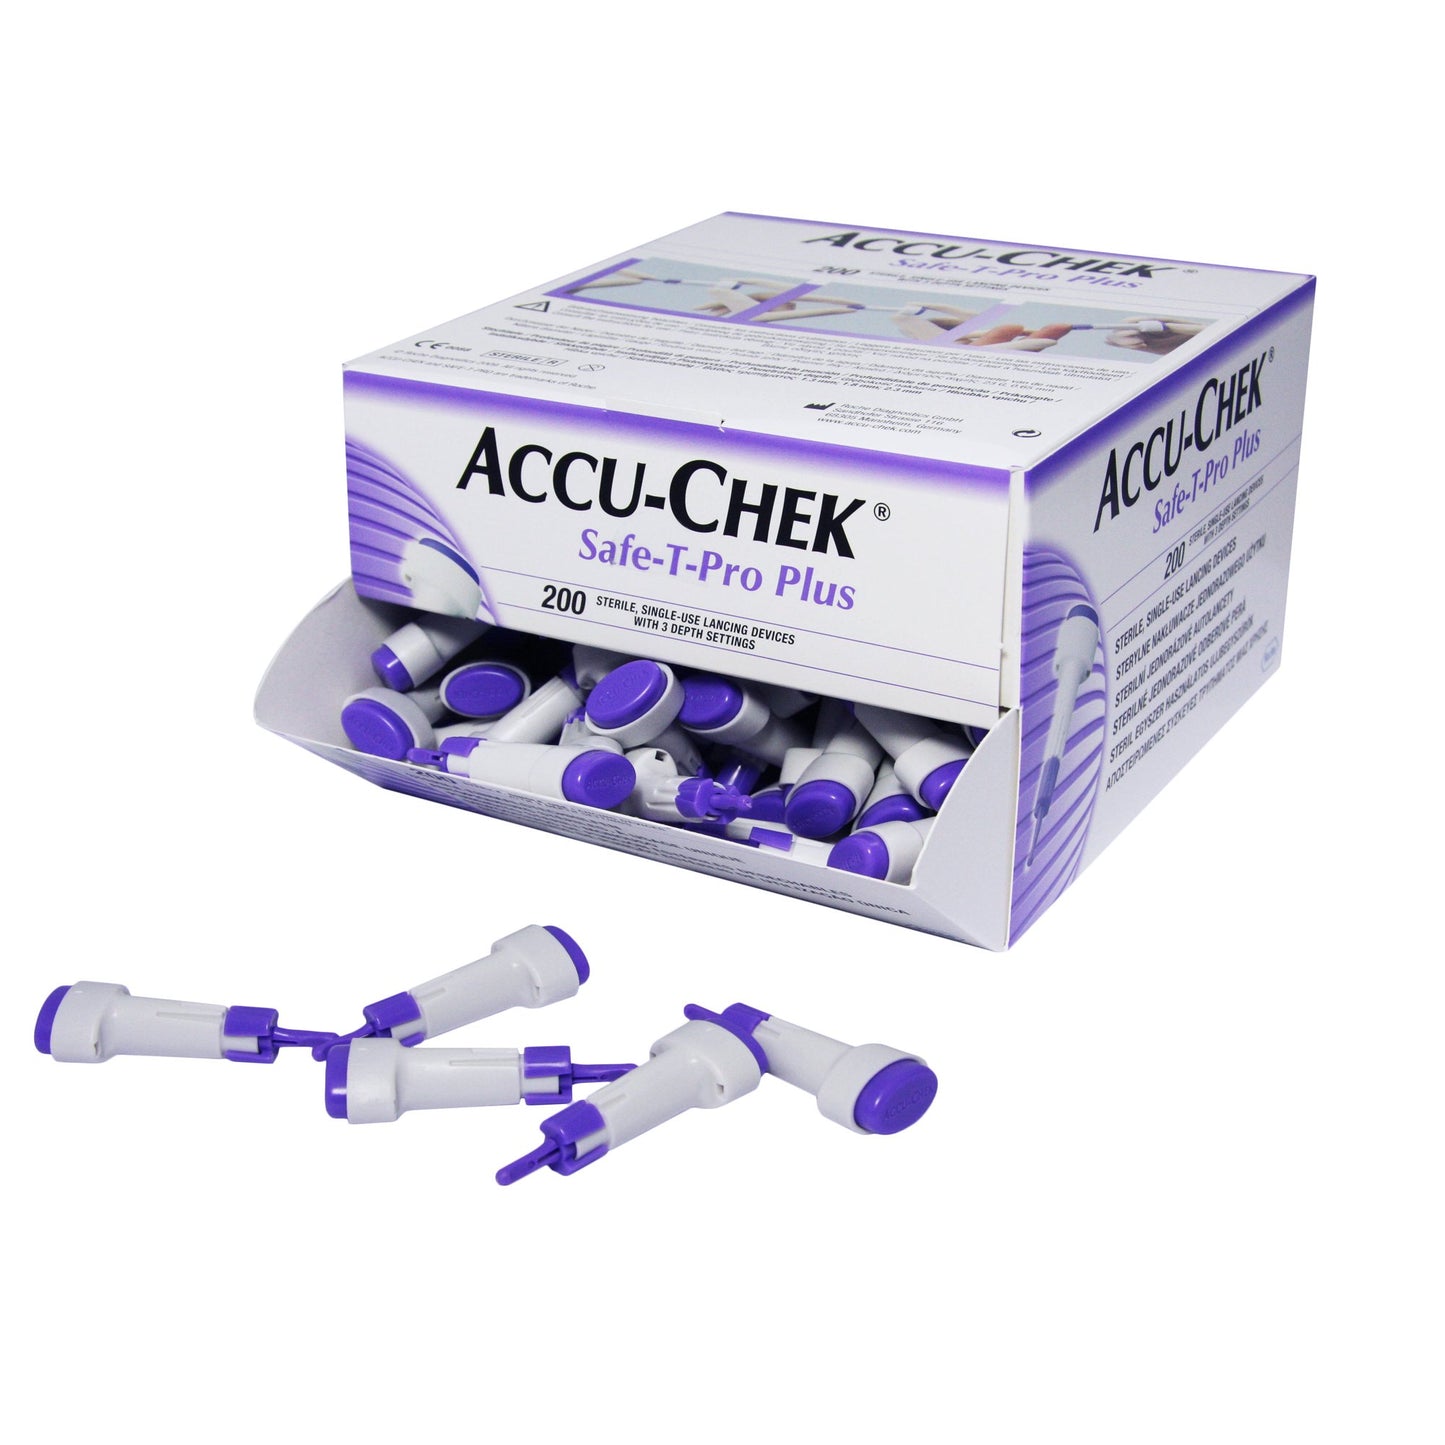 Accu-Chek Safe-T-Pro Plus Safety Lancet